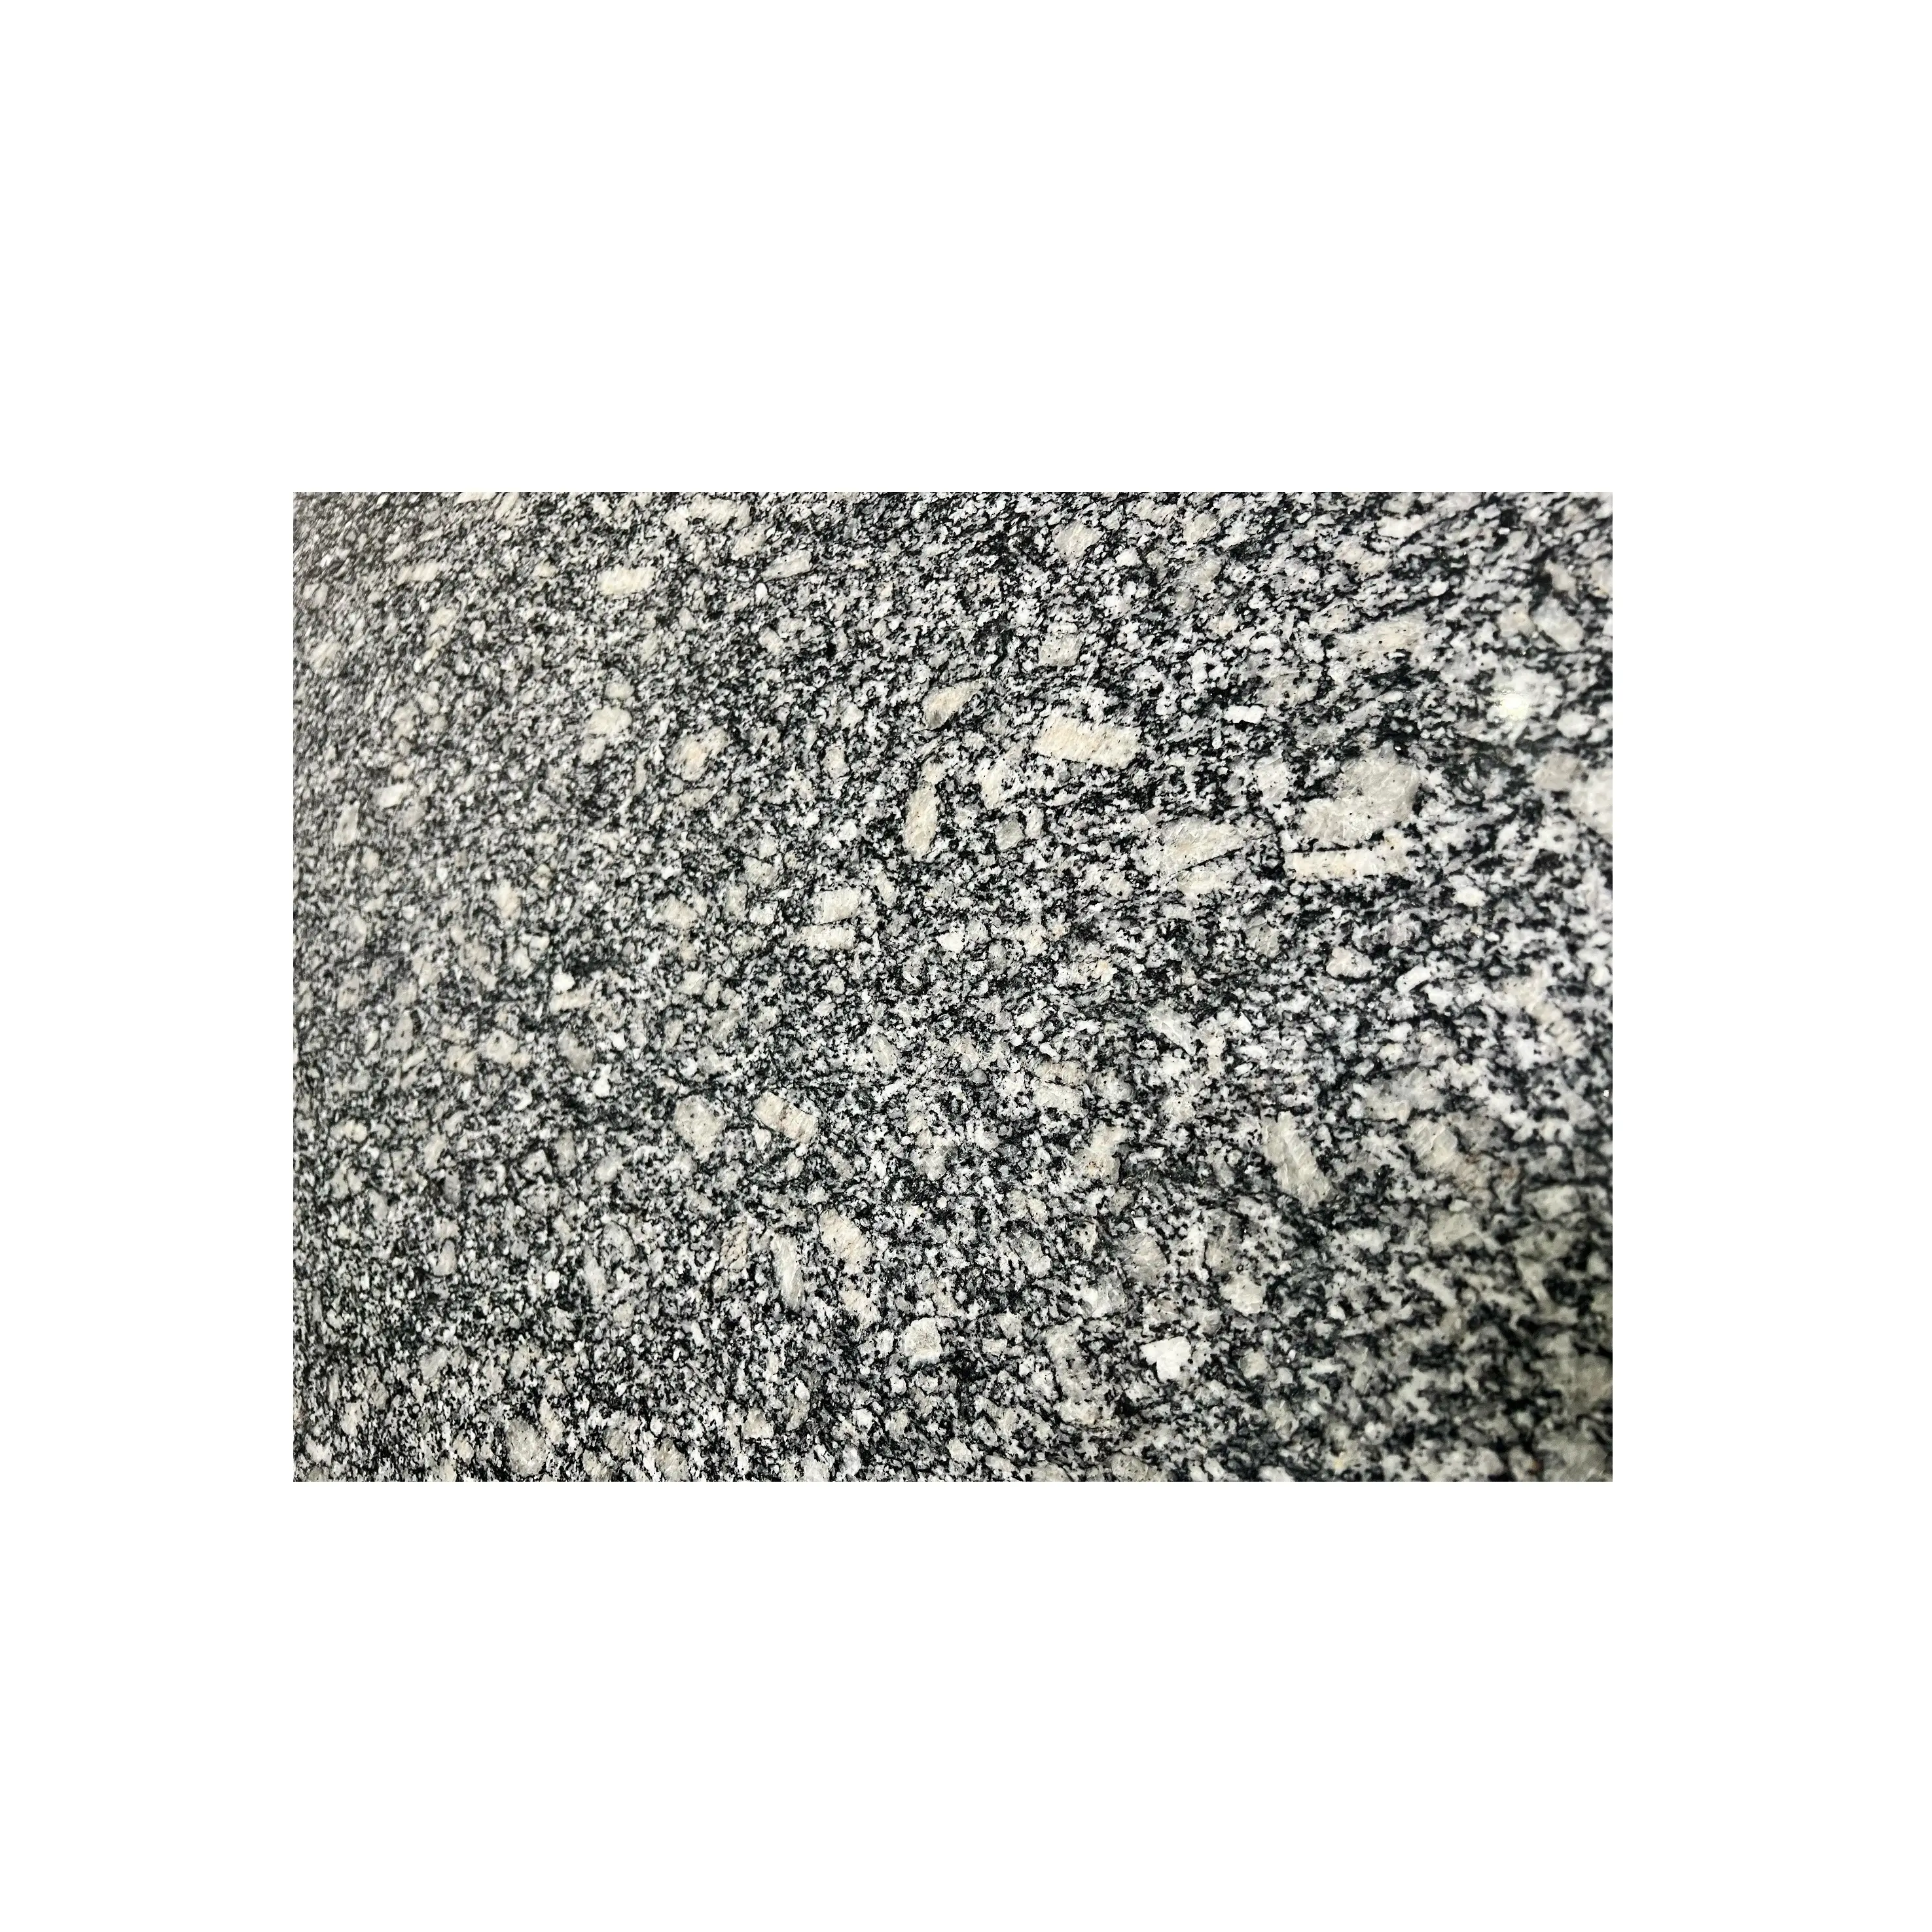 Rauchgraue Granitplatte verwendet für Bodenbelag und Wandverkleidung sowie beliebt verwendet wird auf Bars und Restaurant Tische